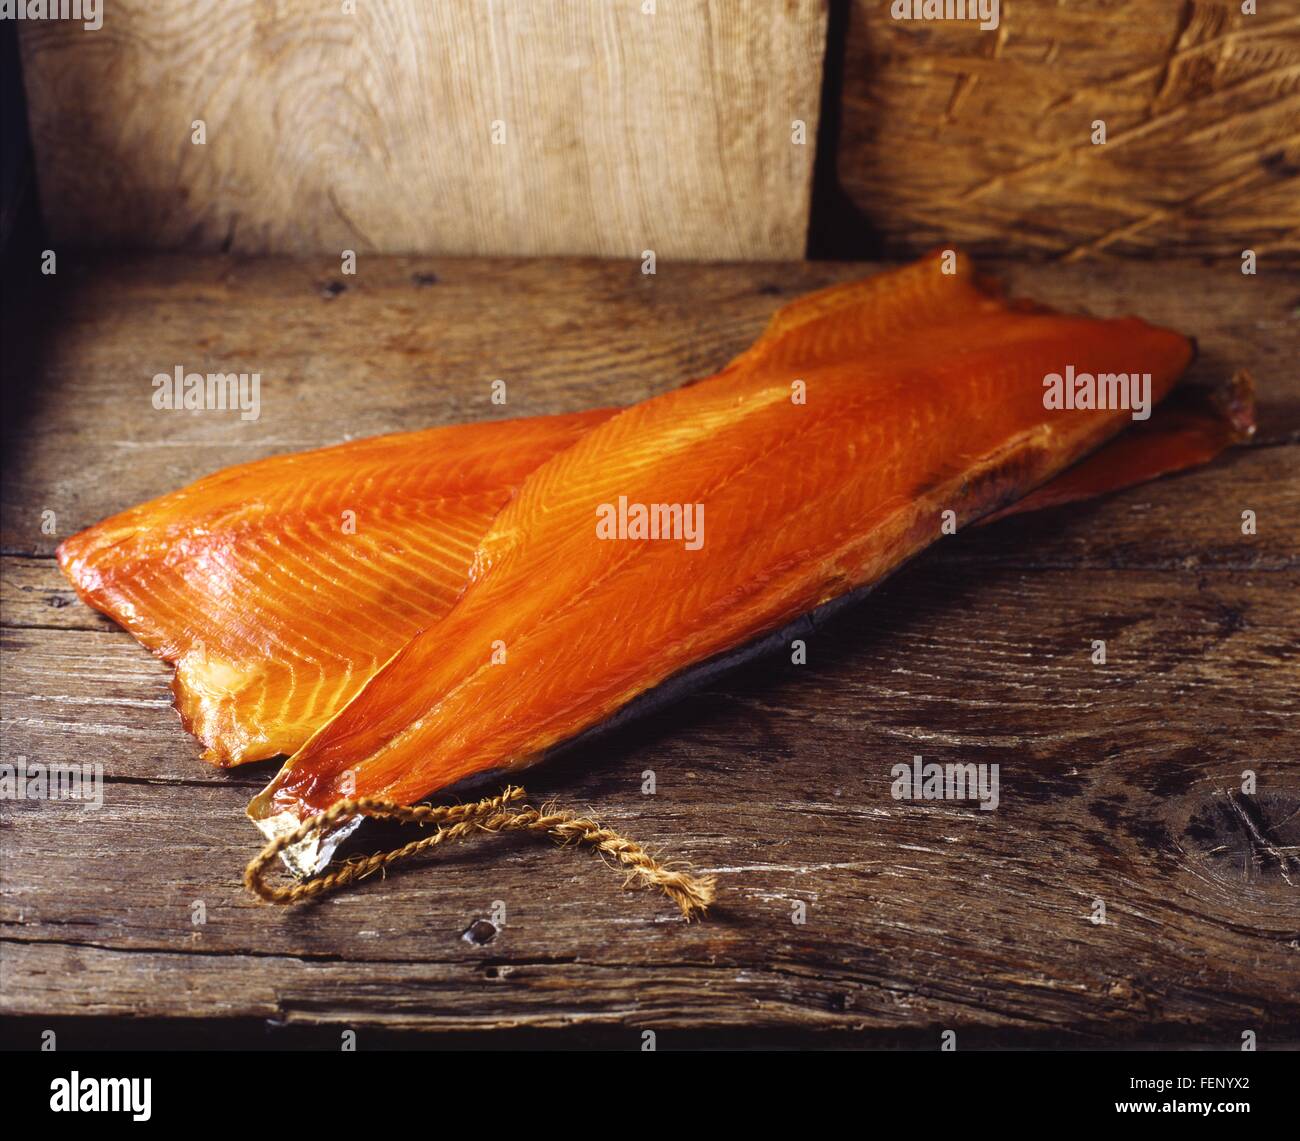 Saumon fumé cru avec la peau sur une table en bois rustique Banque D'Images